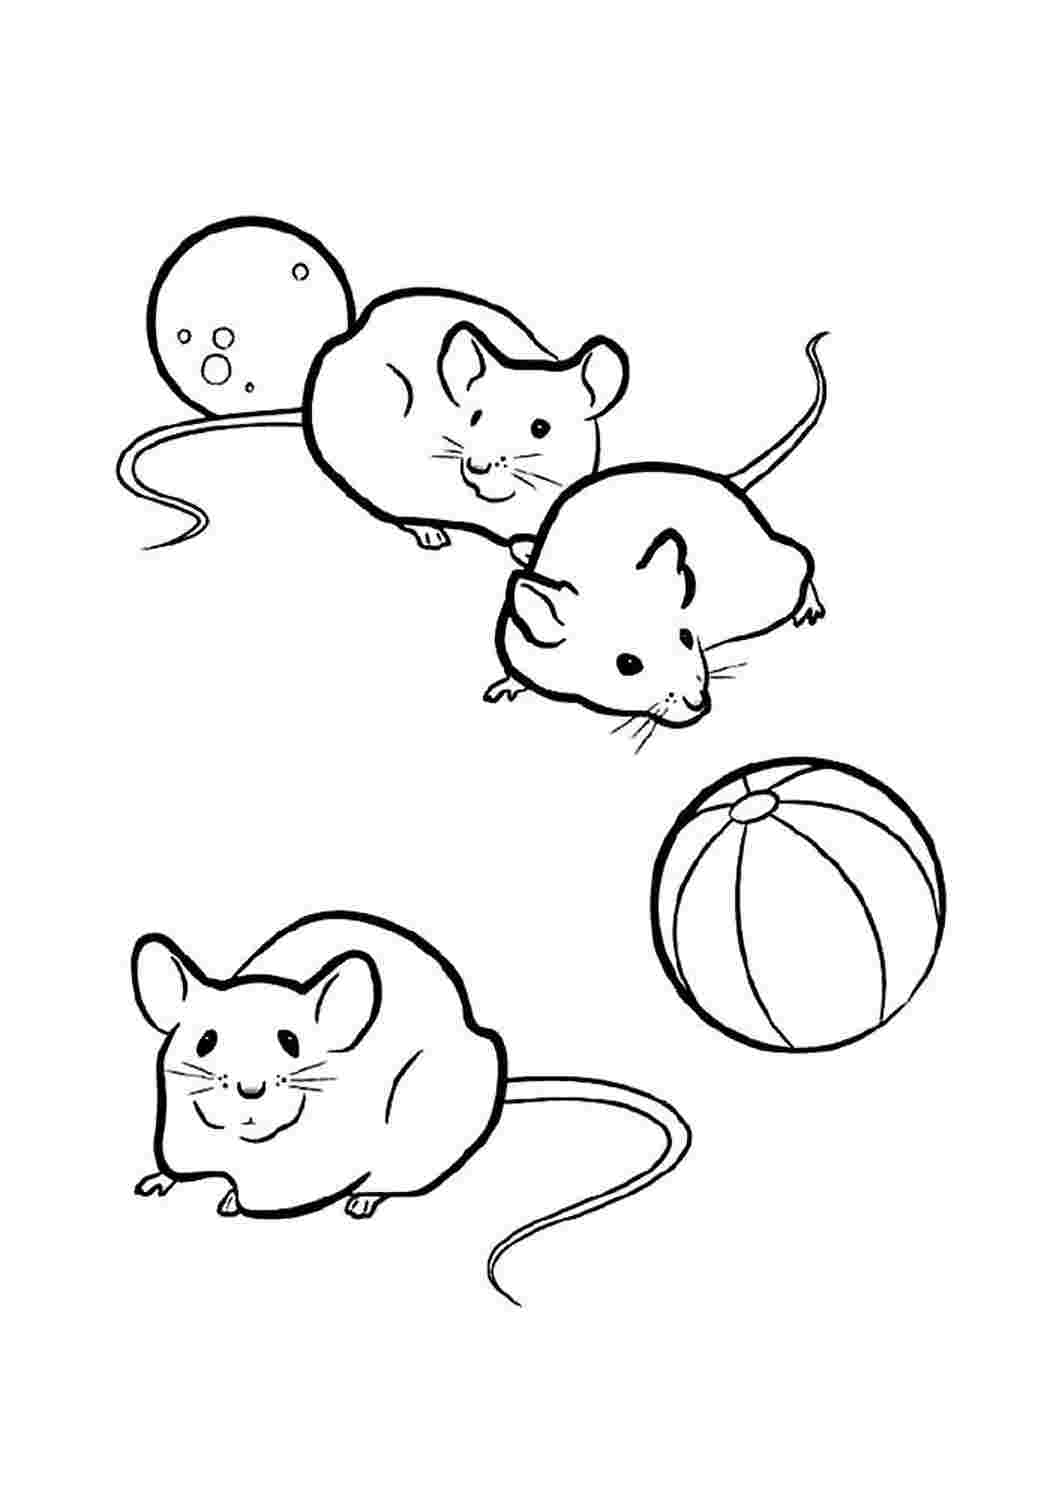 Раскраска мышь распечатать. Раскраска мышка. Мышь раскраска для детей. Раскраска мышонок. Мышка раскраска для детей.